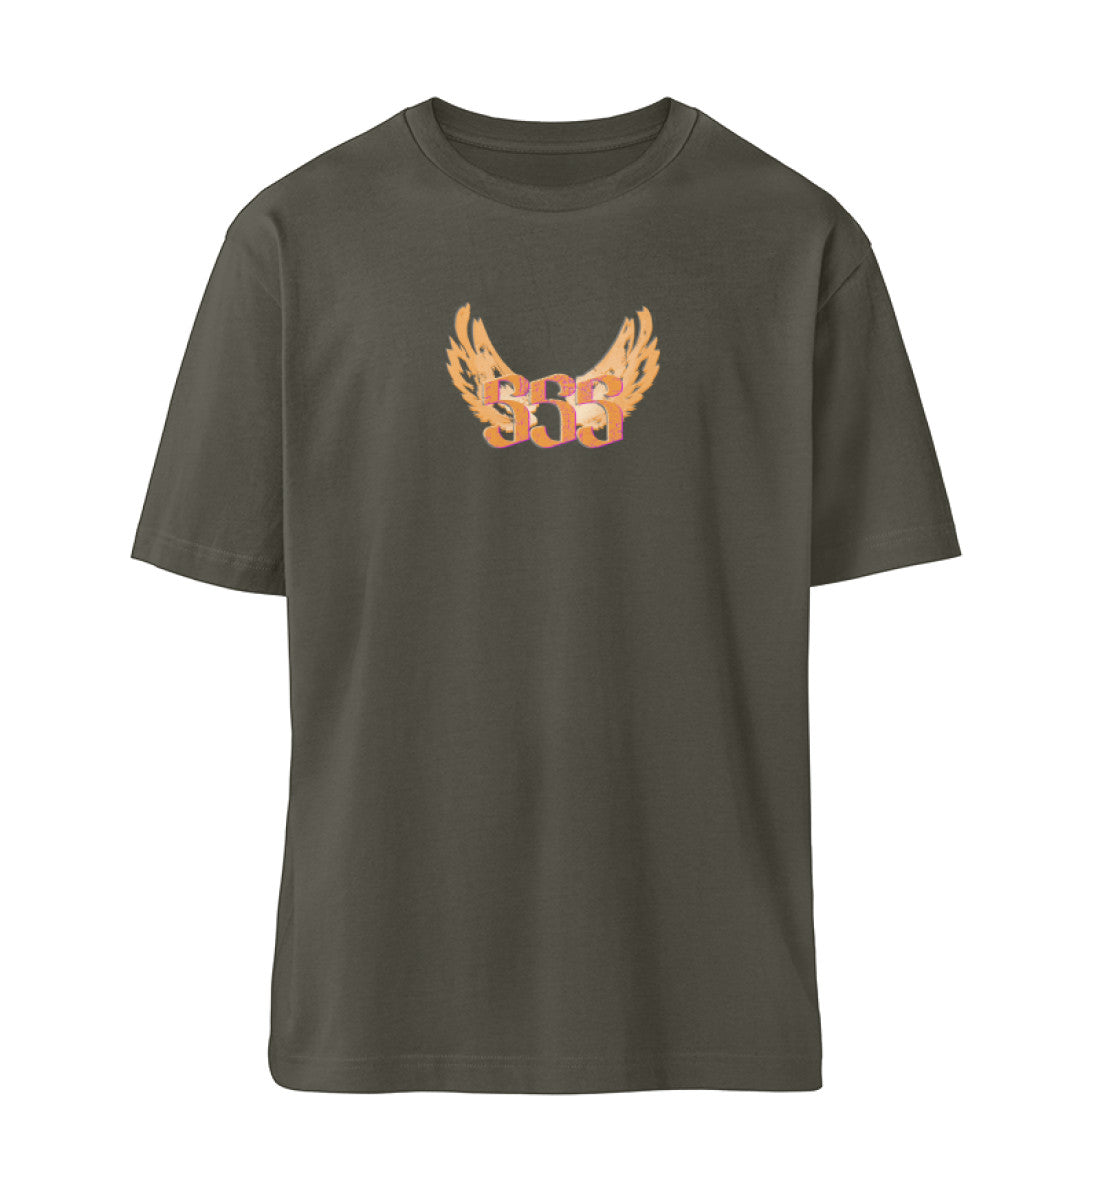 Khaki farbiges T-Shirt Unisex Relaxed Fit für Frauen und Männer bedruckt mit dem Design der Roger Rockawoo Kollektion Engelszahl 555